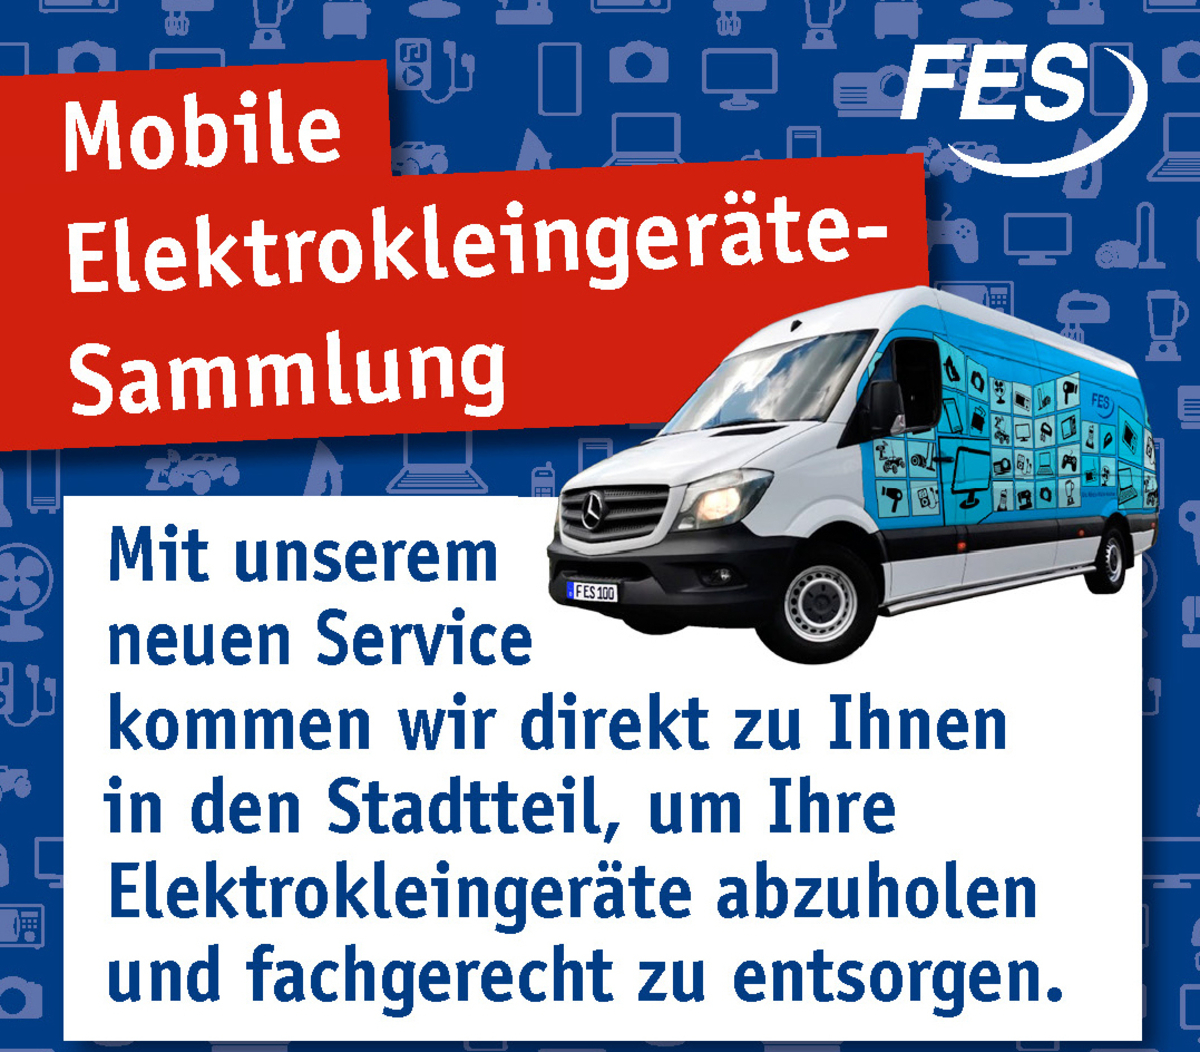 Informiren Sie sich über die mobile Elektrokleingerätesammlung der FES Frankfurt